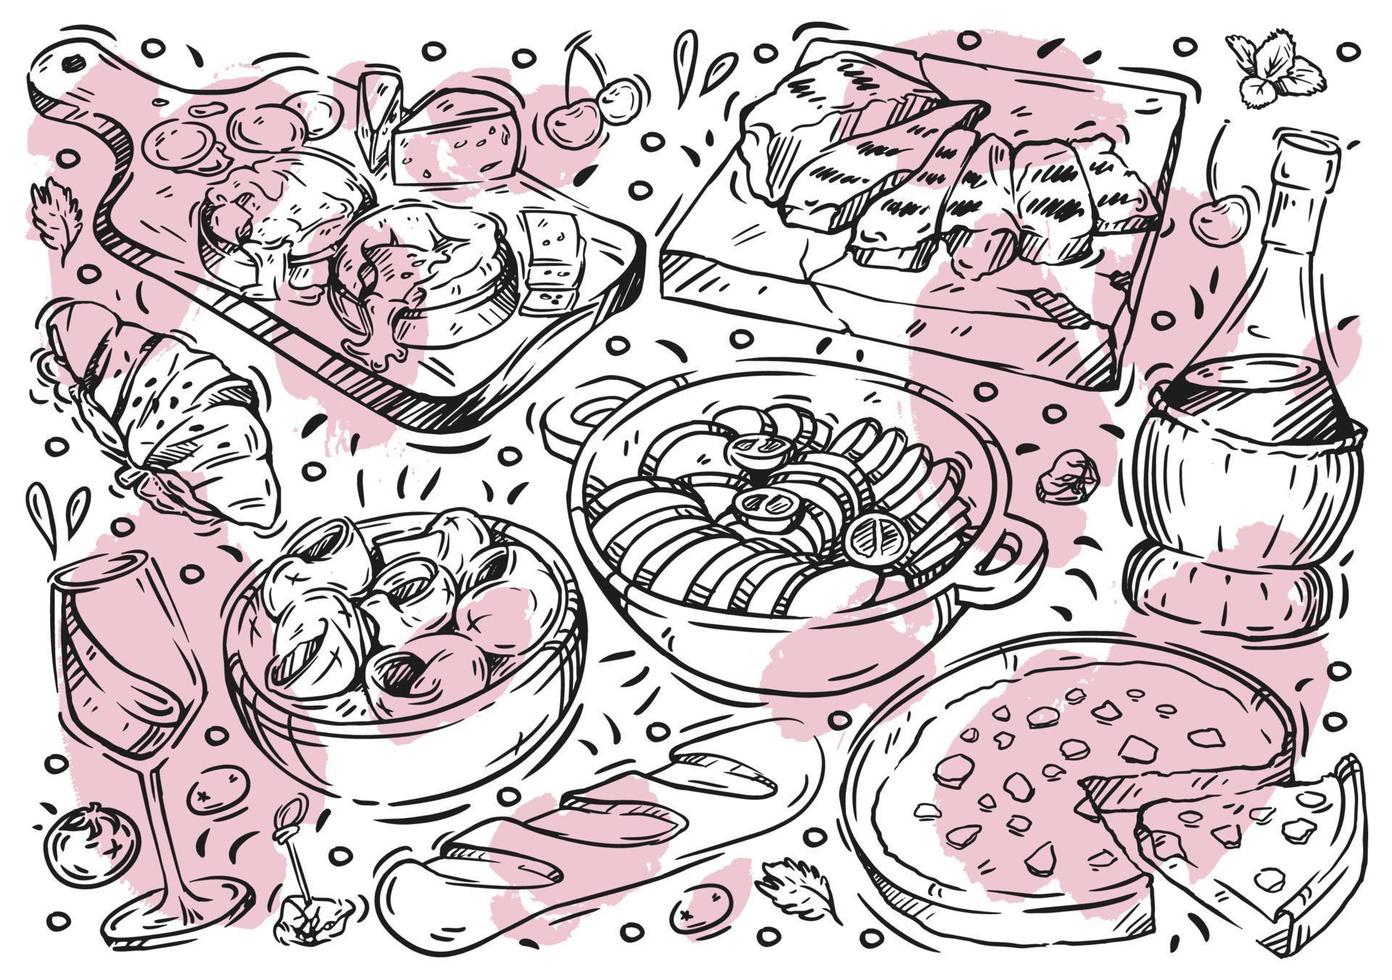 mão desenhada comida de ilustração vetorial linha no quadro branco. doodle cozinha francesa, ratatouille, queijo azul, vinho, baguete, torta, caracóis, croissant, carne grelhada vetor